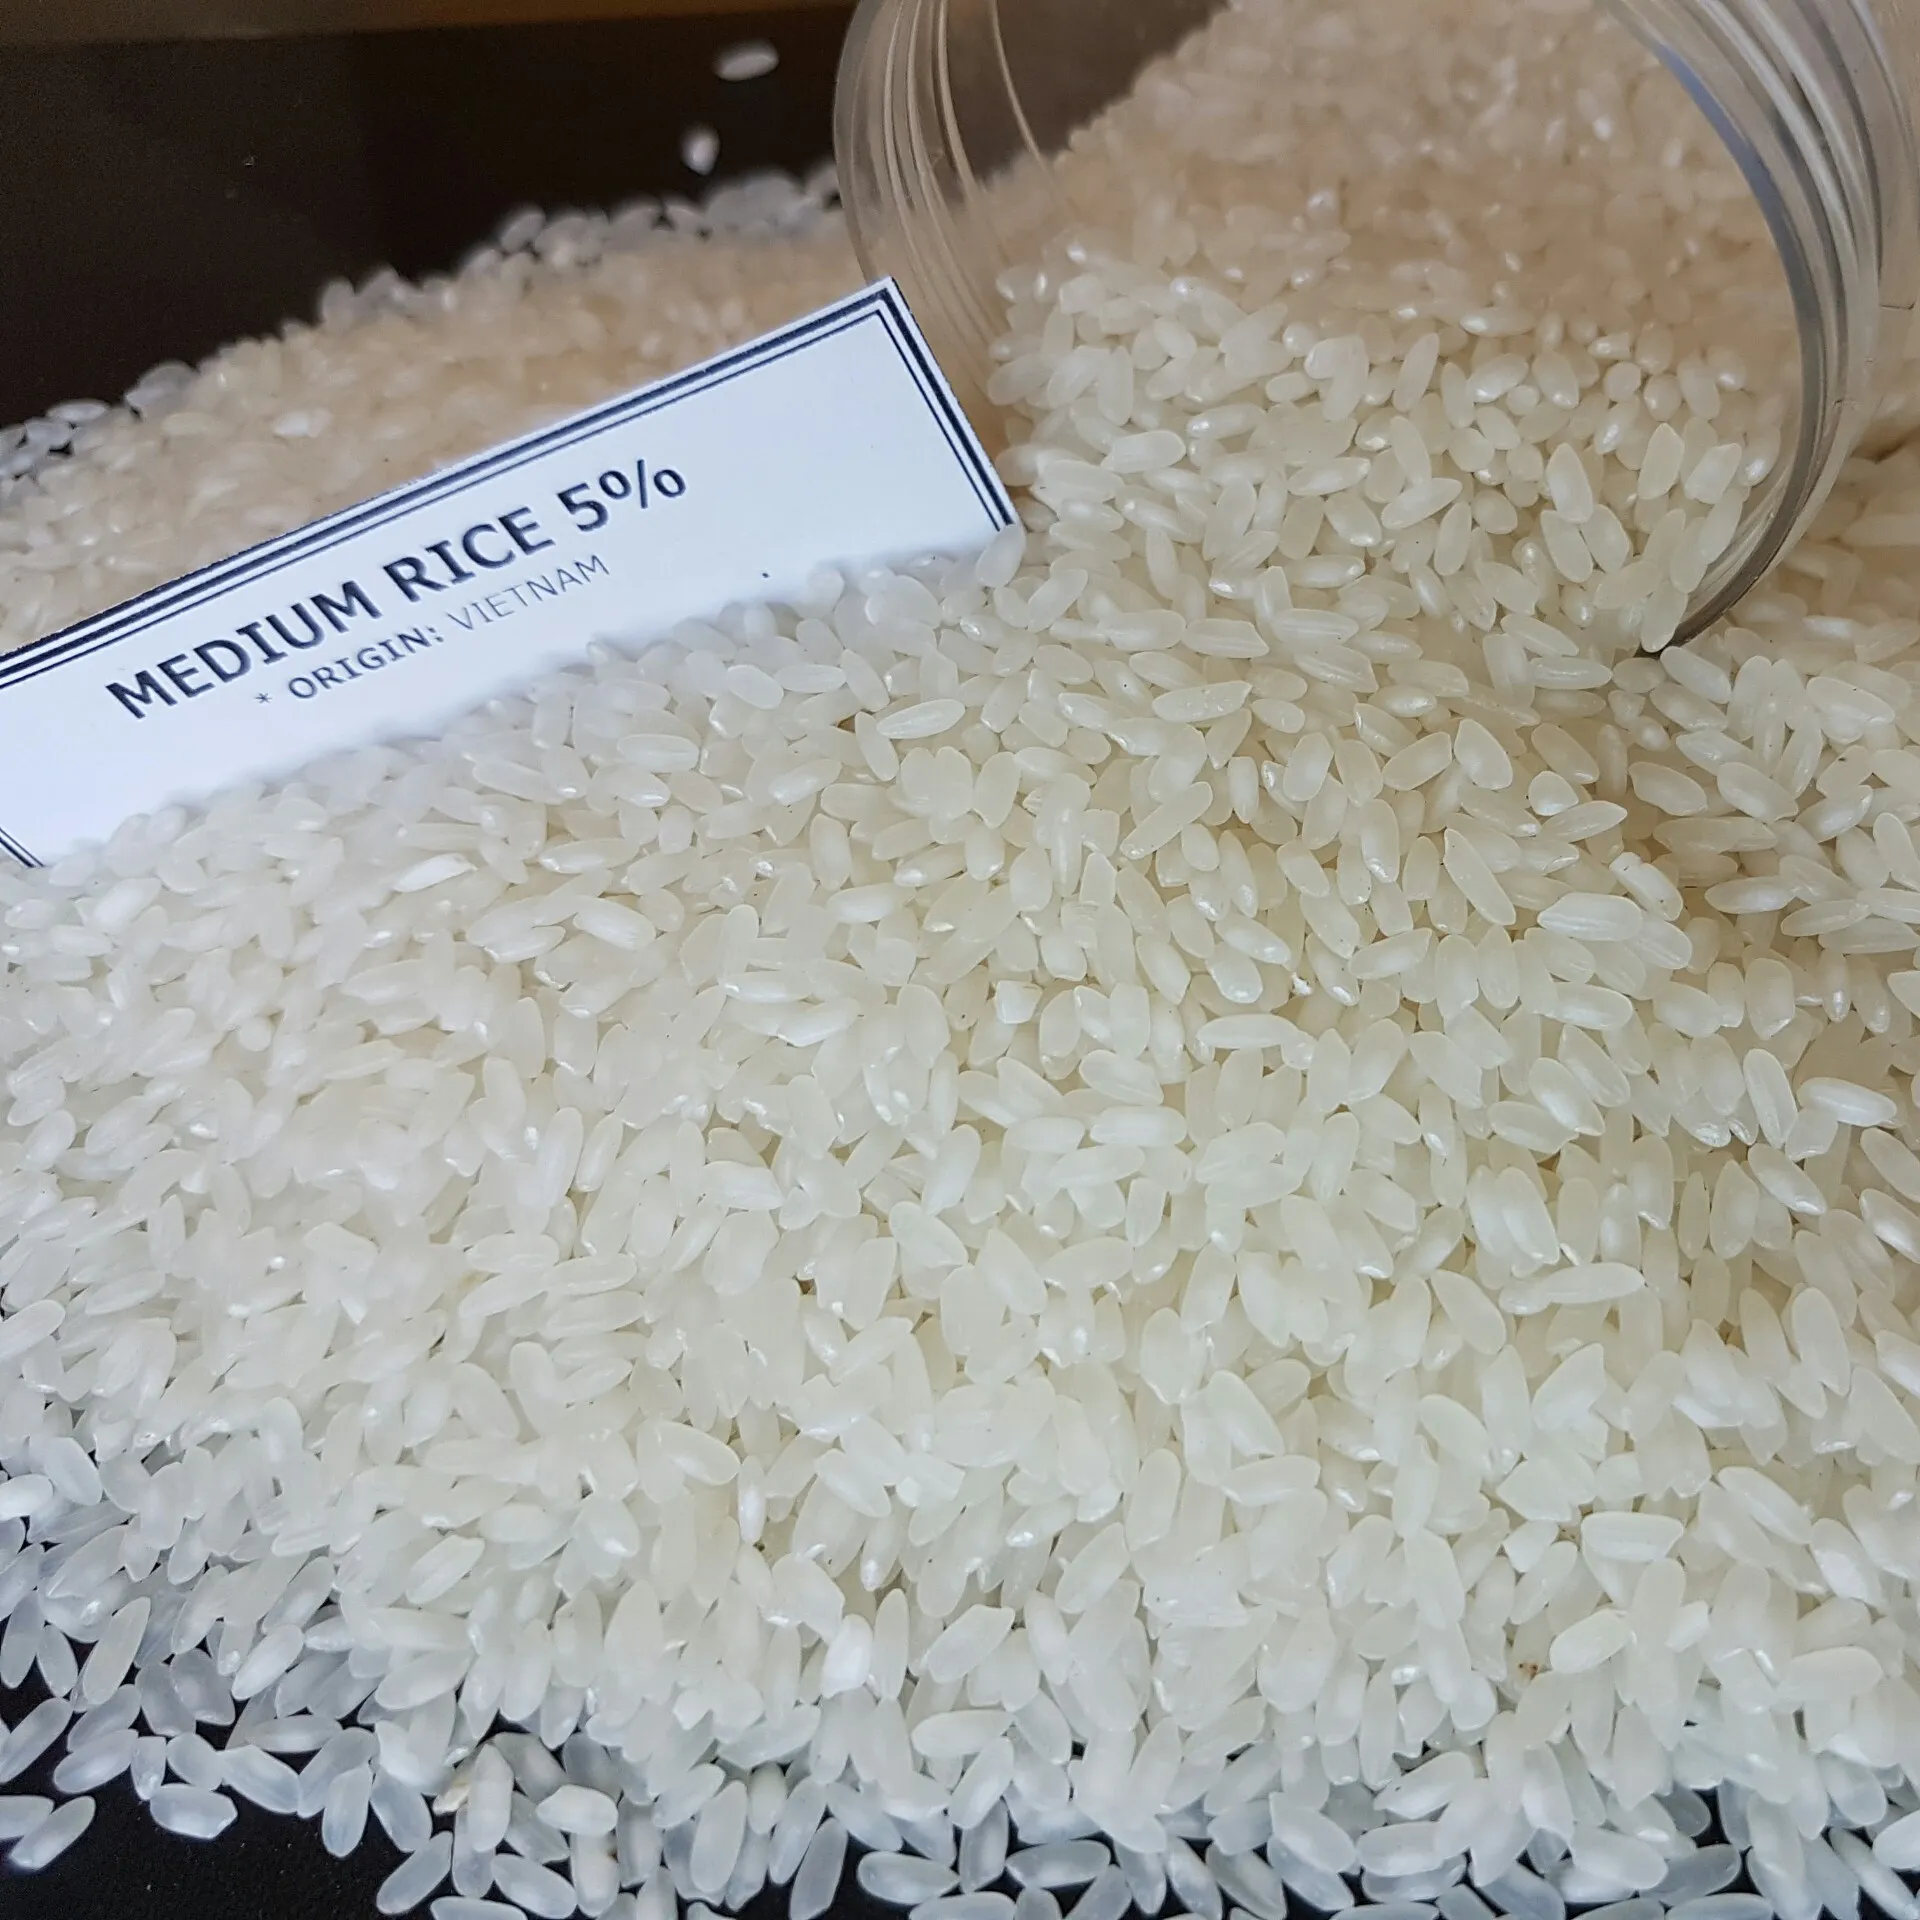 וייטנאם בינוני/CAMOLINO אורז 5% שבור באיכות הגבוהה ביותר עם המחיר הטוב ביותר-Whatsapp + 84765149122